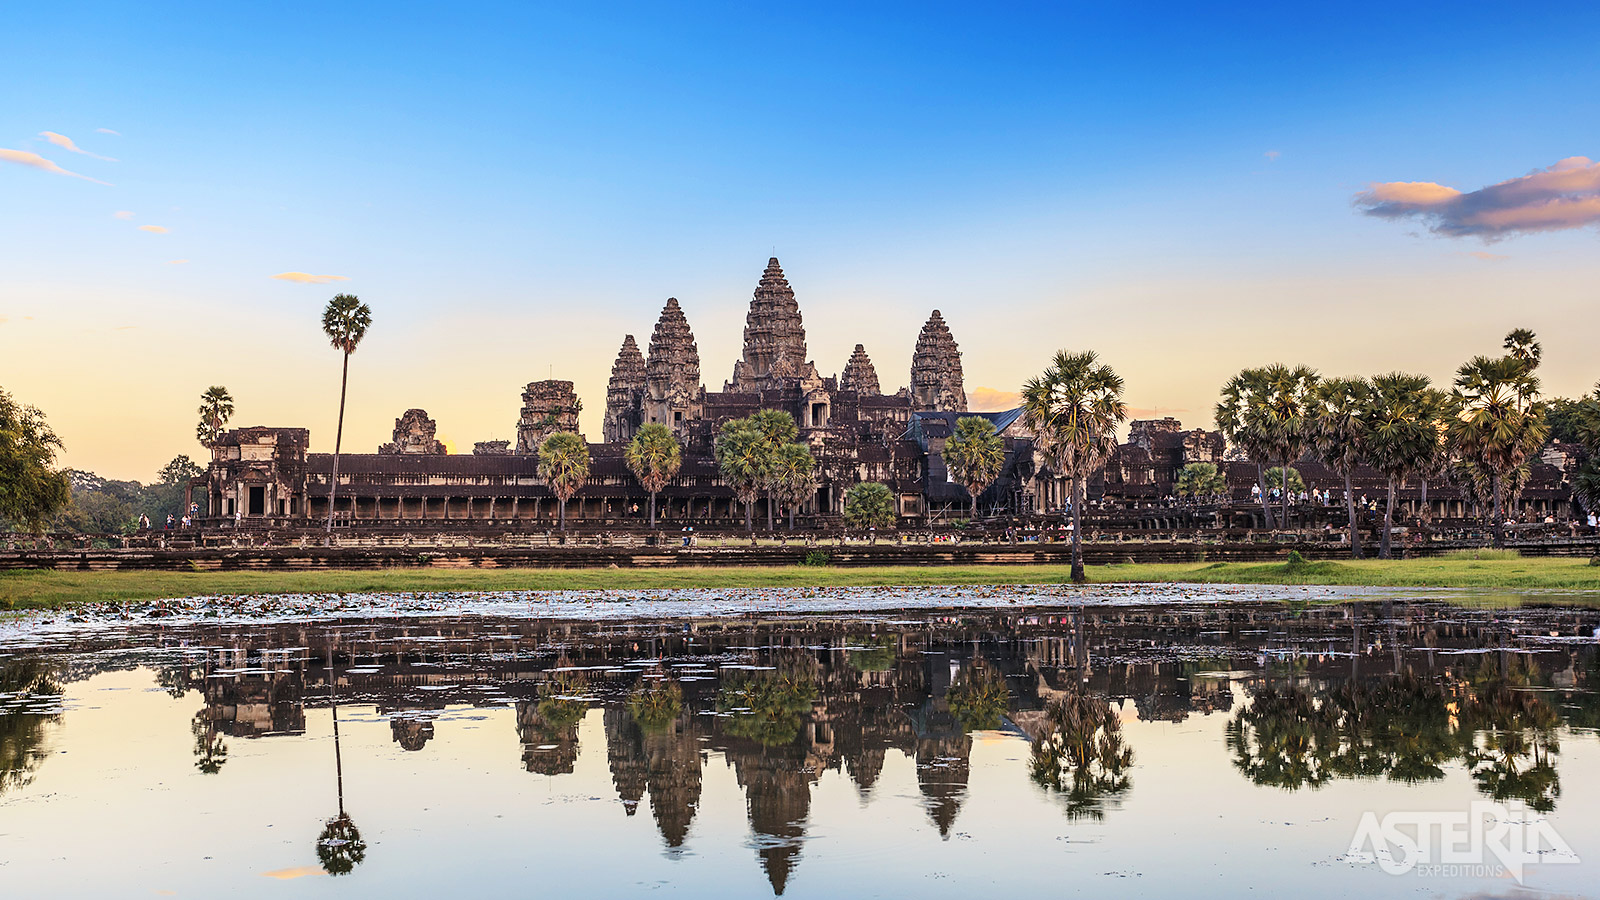 Angkor Wat en zijn vijvers... één  van de meest iconische tempels in de wereld